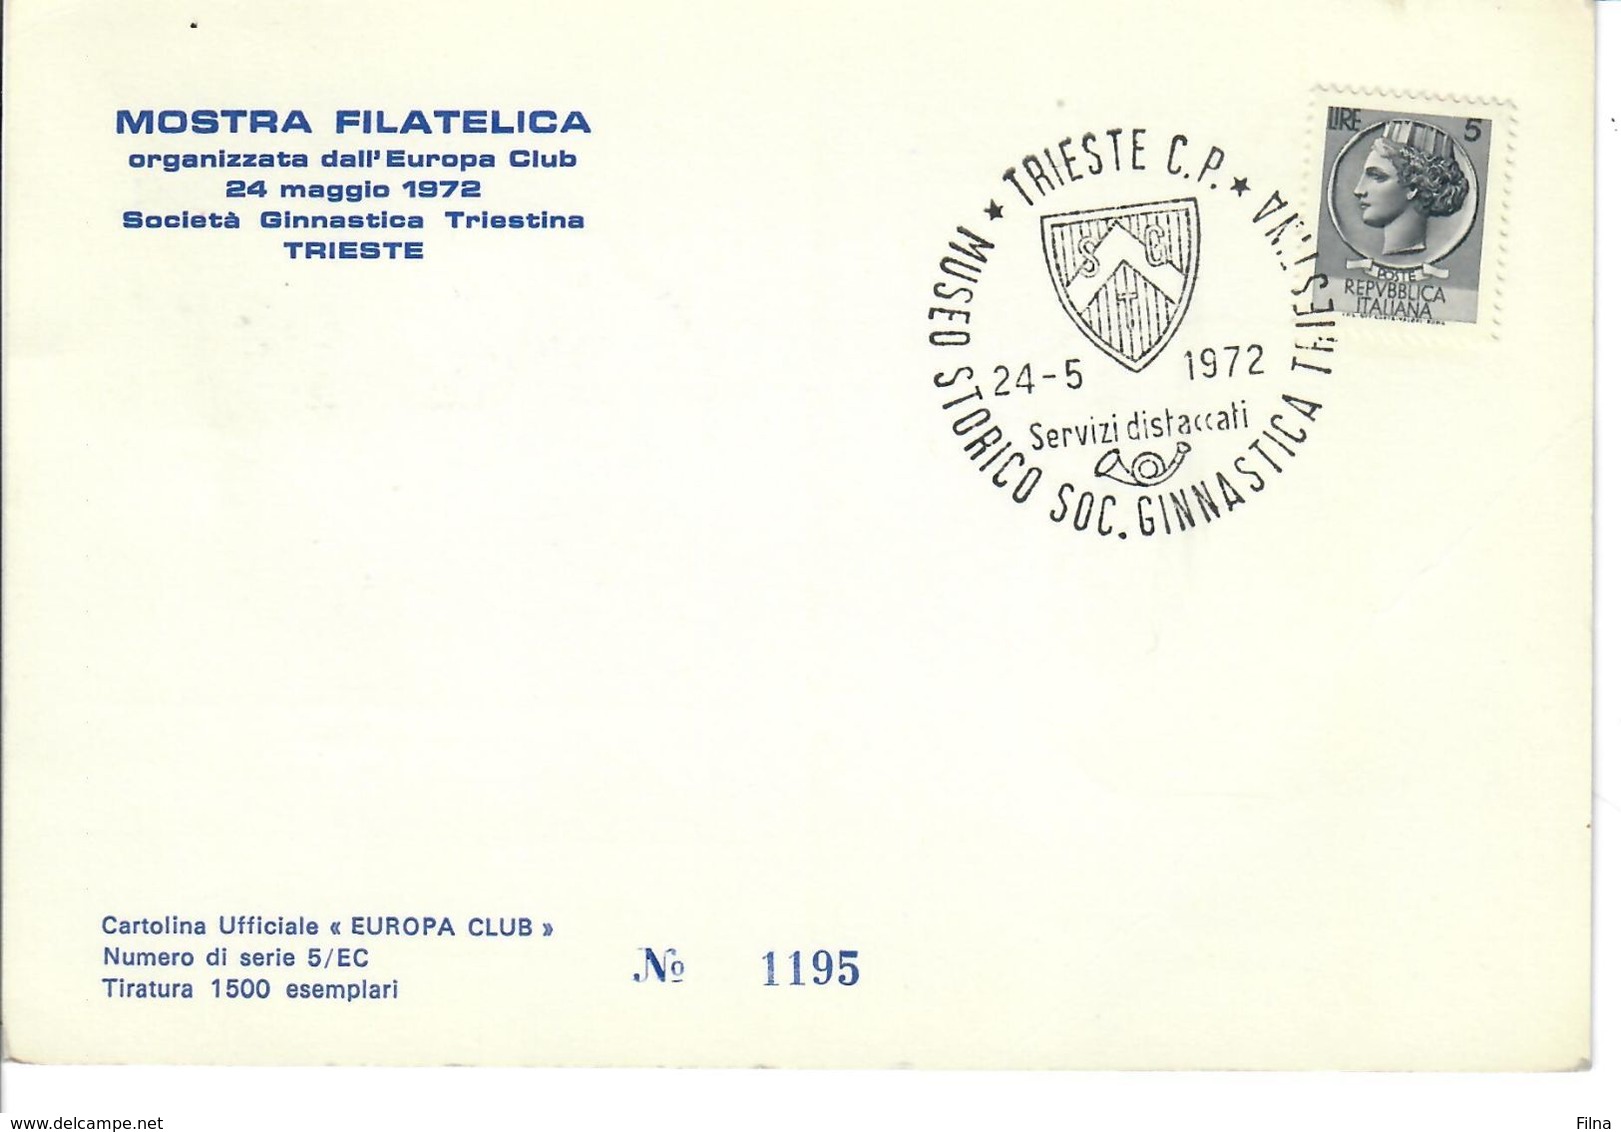 CARTOLINA UFFICIALE  INAUGURAZIONE MUSEO STORICO SOCIETA'  GINNASTICA TRIESTINA 24 MAGGIO 1972 - Inaugurations